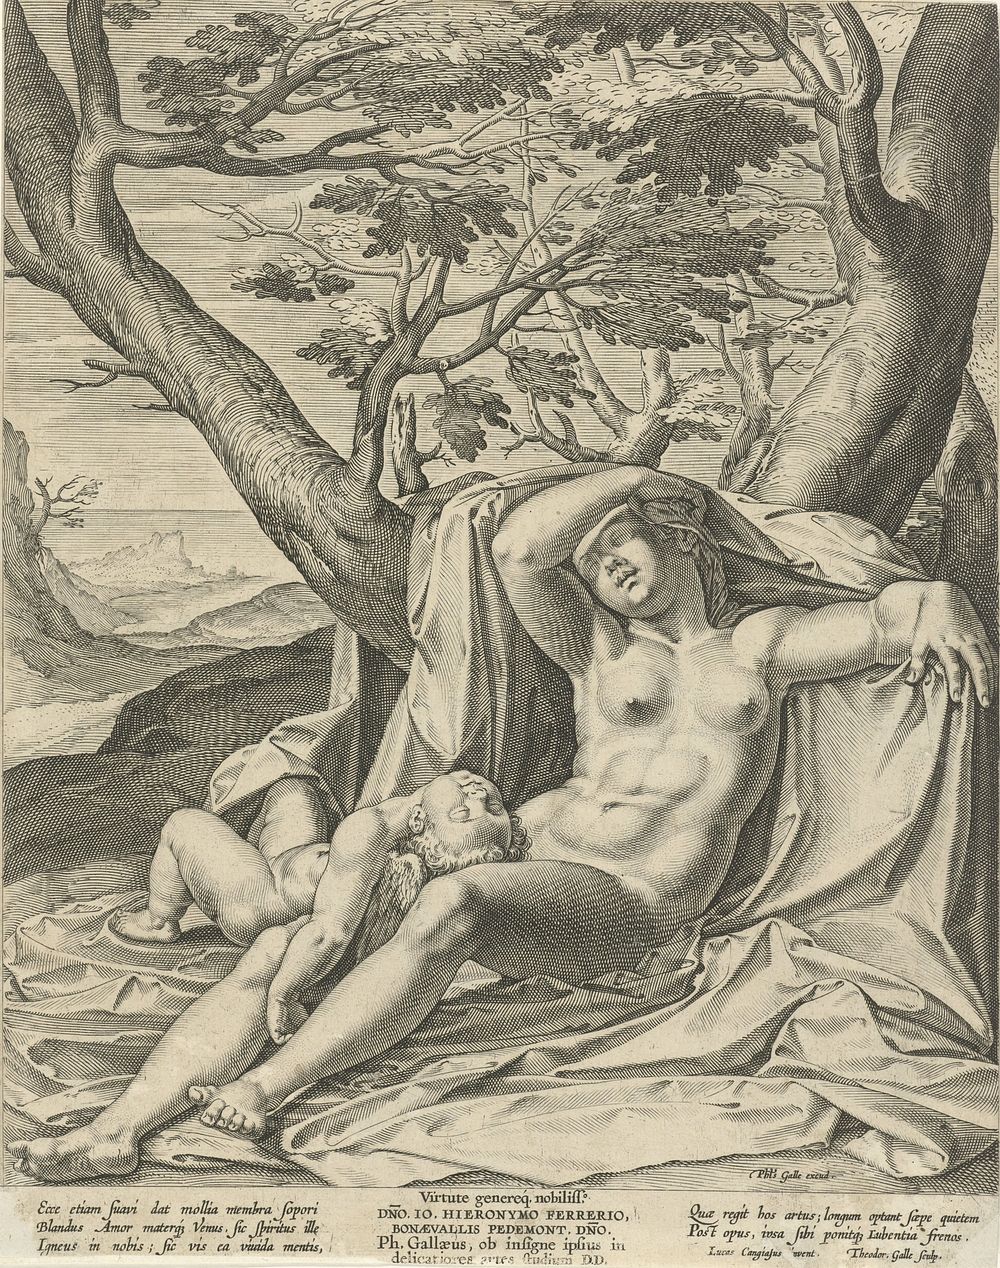 Slapende Venus en Cupido (1581 - 1612) by Theodoor Galle, Luca Cambiaso, Philips Galle and Hieronymus Ferrerio